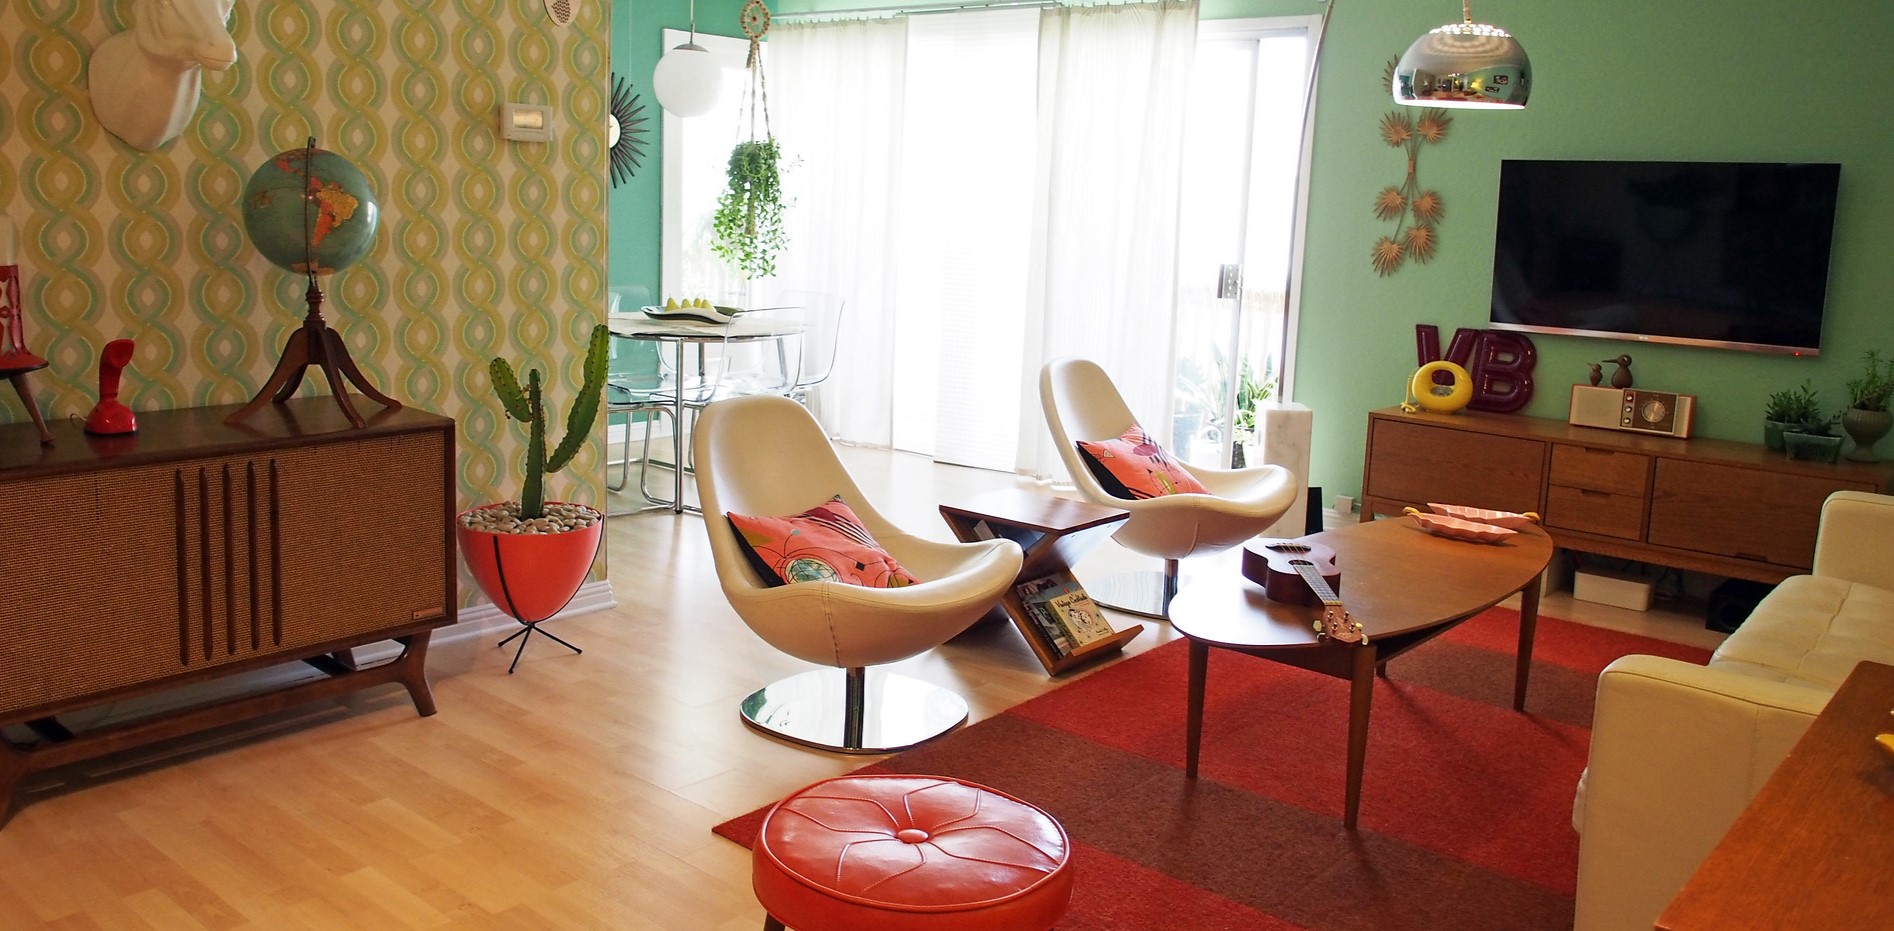 Дополнить интерьер гостиной можно креслами и тумбами в стиле ретро